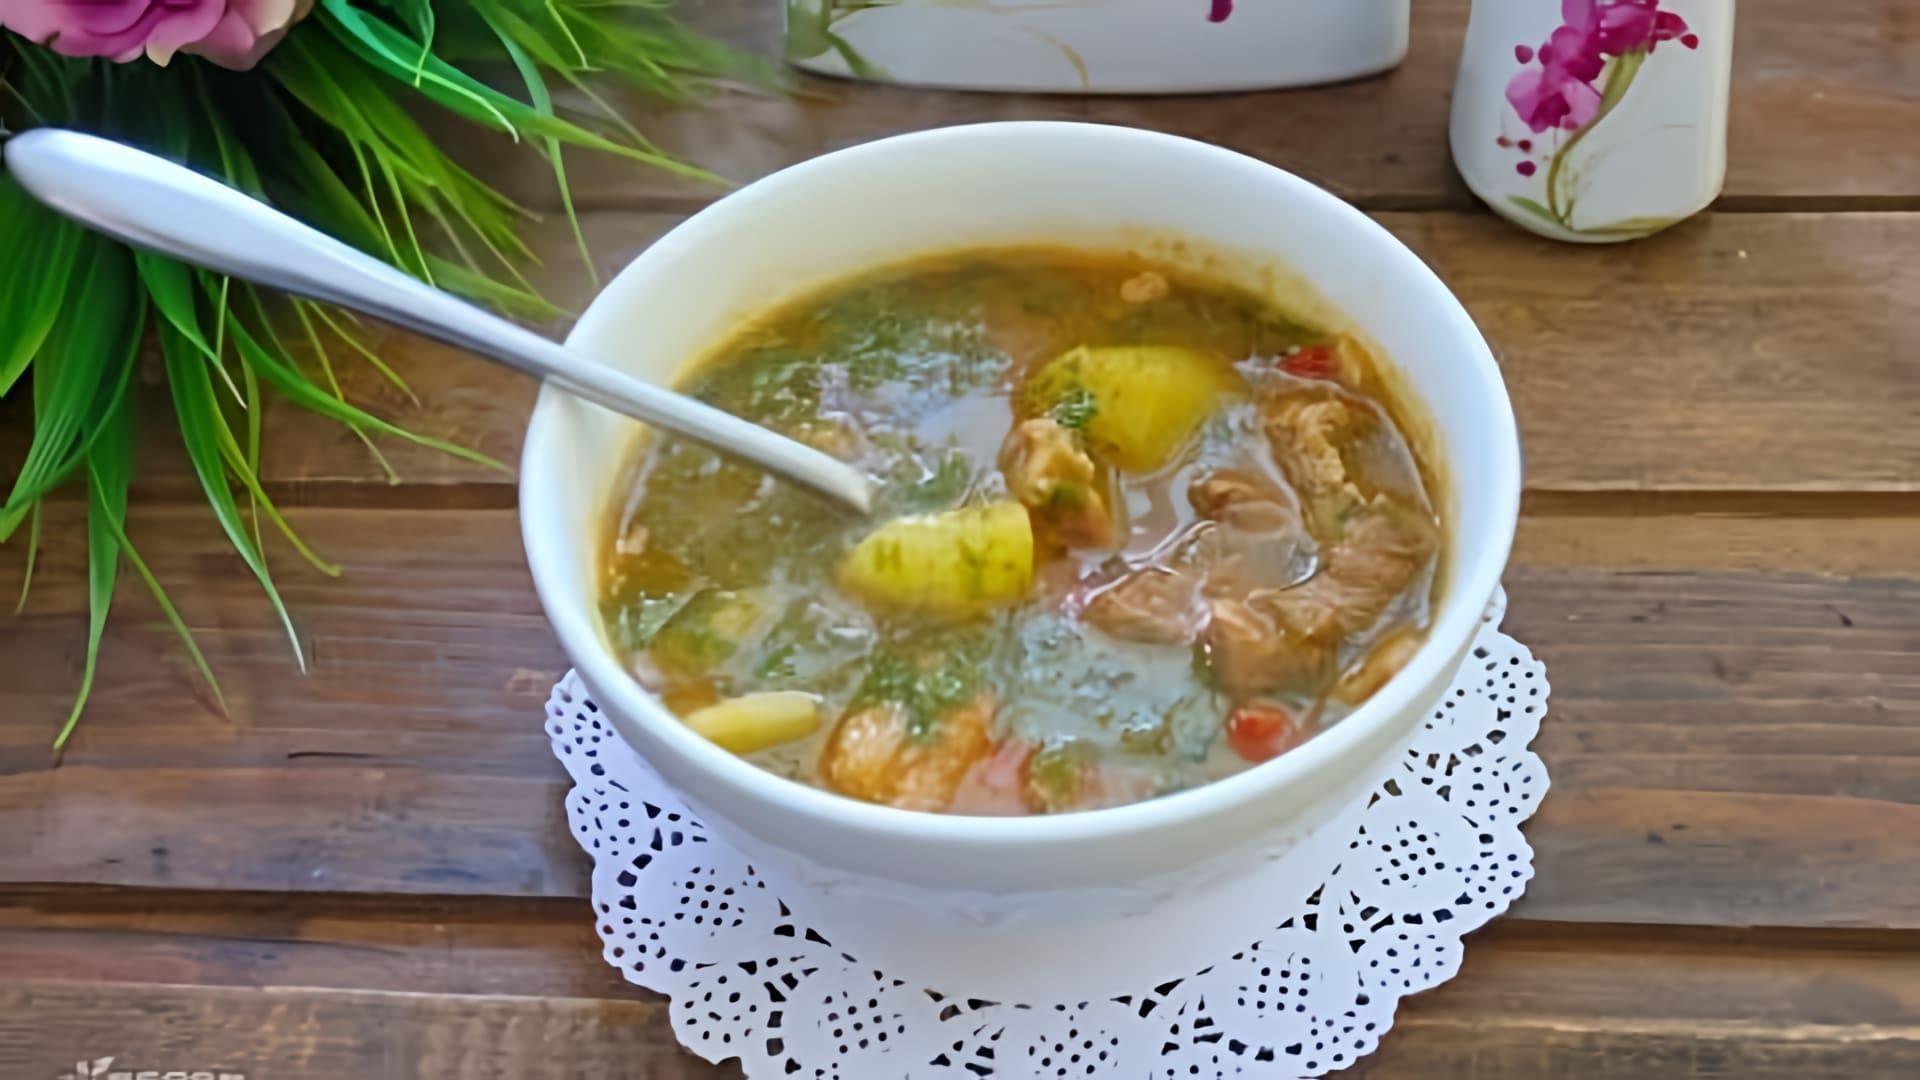 В этом видео представлен пошаговый рецепт приготовления цыганского острого супа